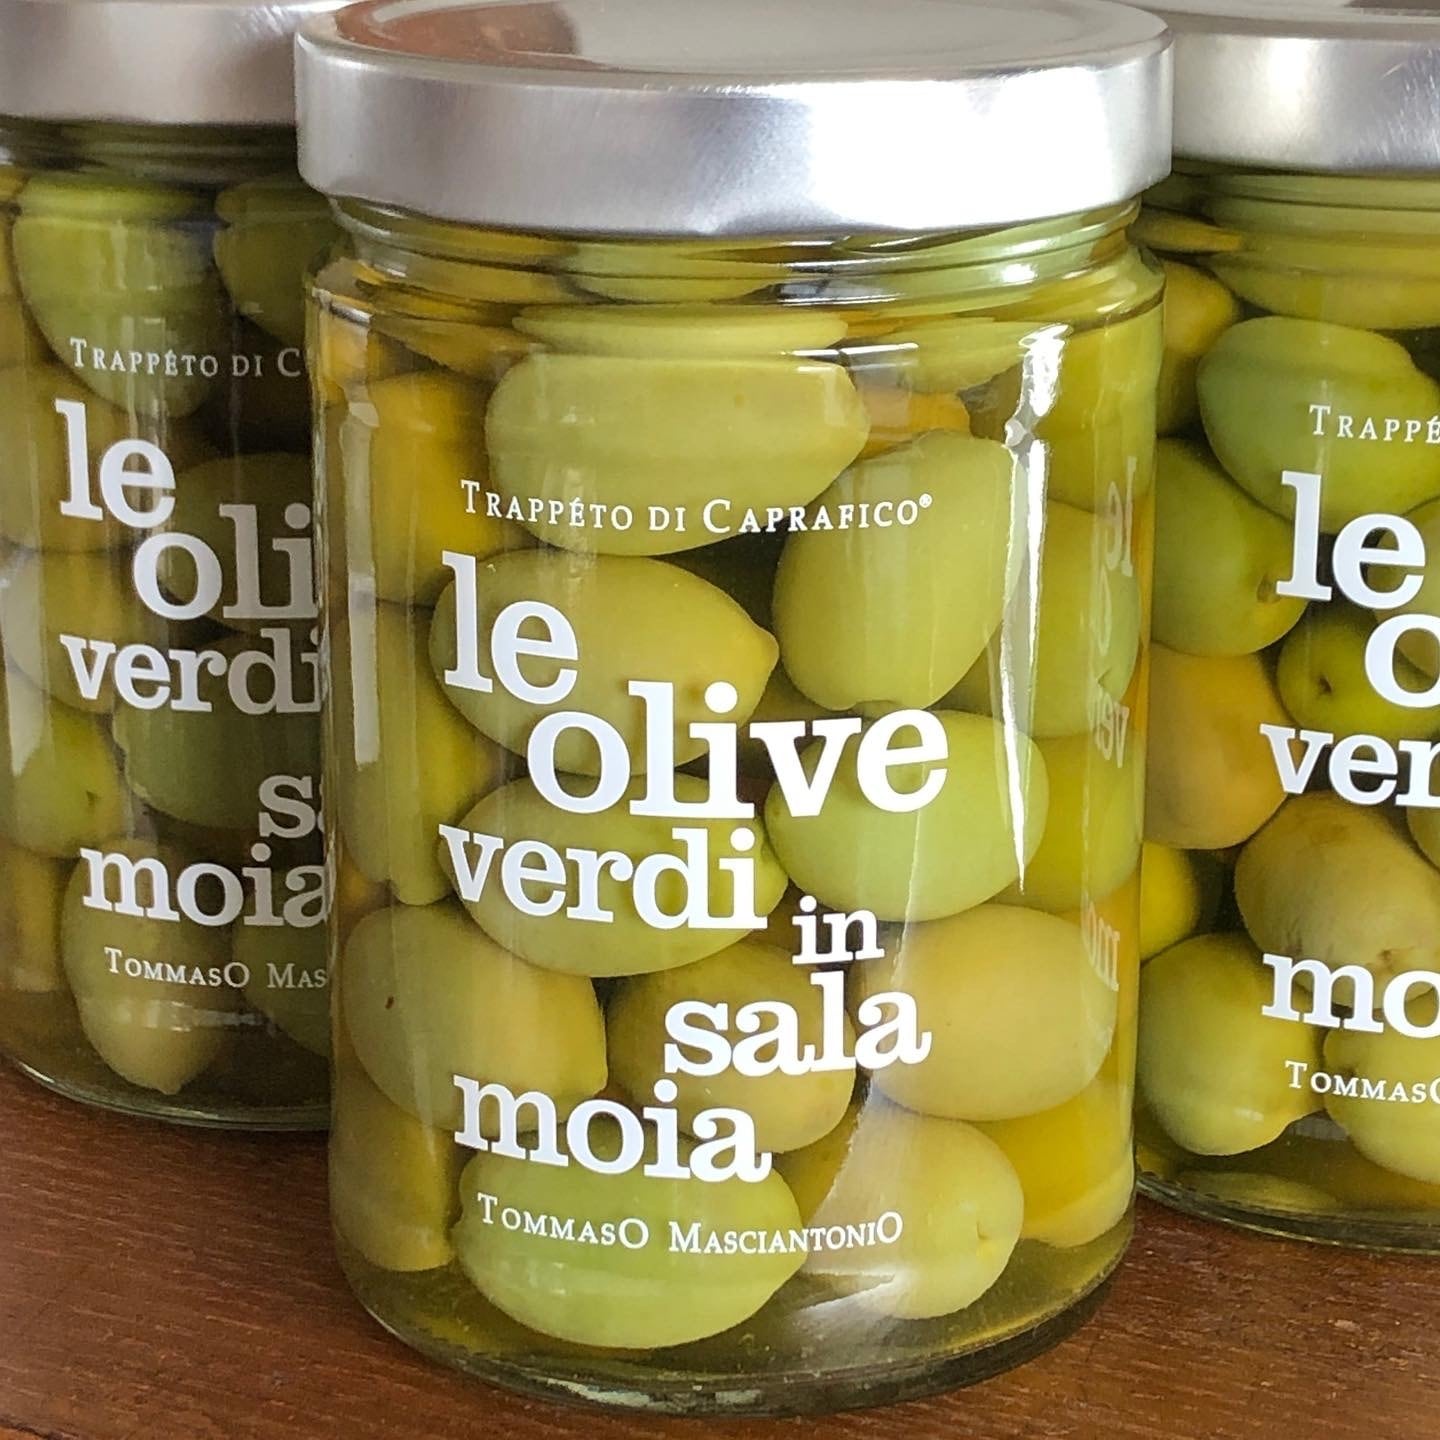 再入荷】 トンマーゾ マッシャントニオ農園 <br>グリーン オリーブ 塩水漬 オリーブの実 <br>TOMMASO MASCIANTONIO le  olive verdi in salamoia